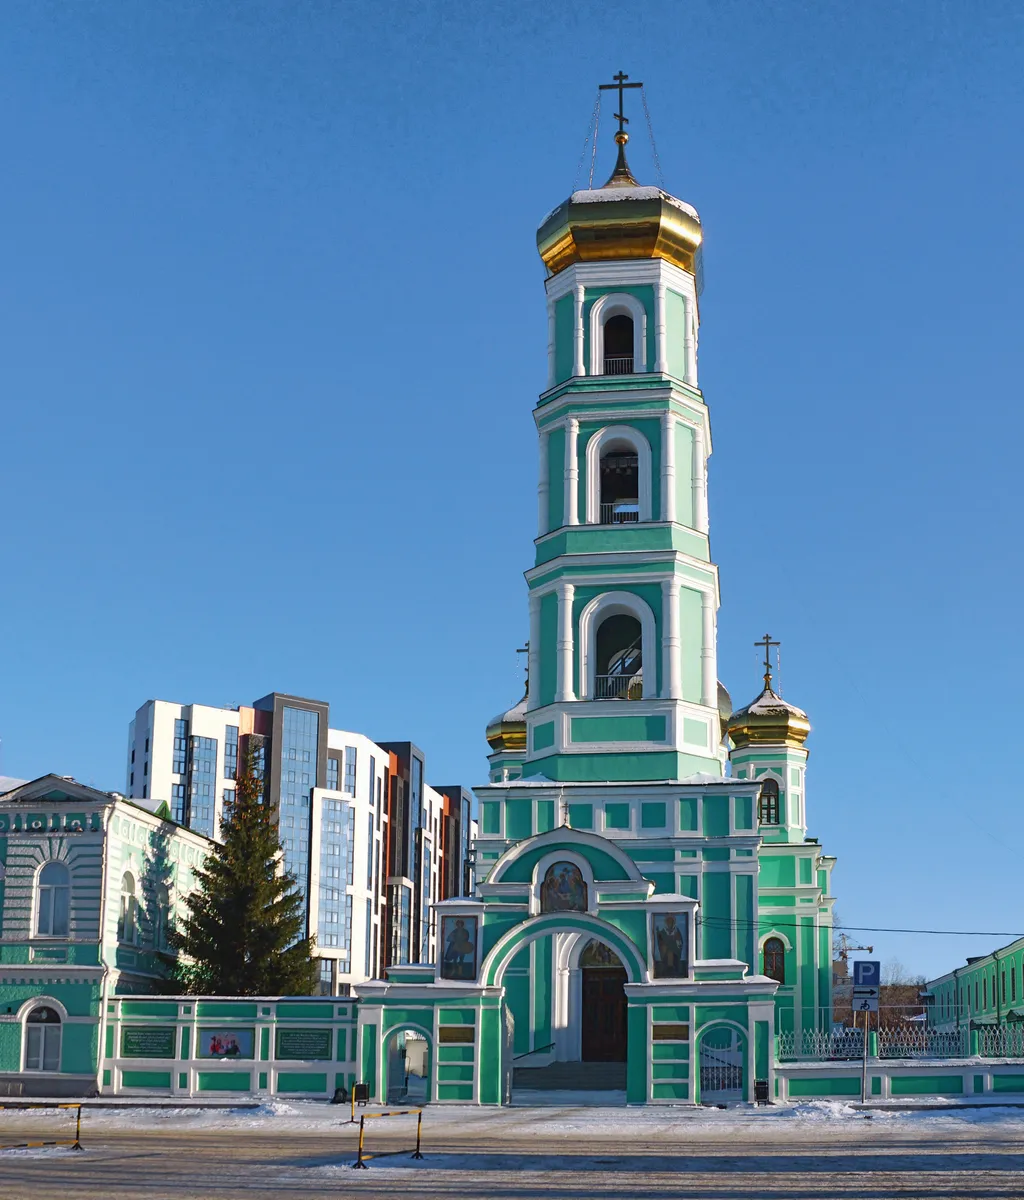 Свято-Троицкий кафедральный собор (Слудская церковь) / Saint-Trinity cathedral (Sludskaya Church)